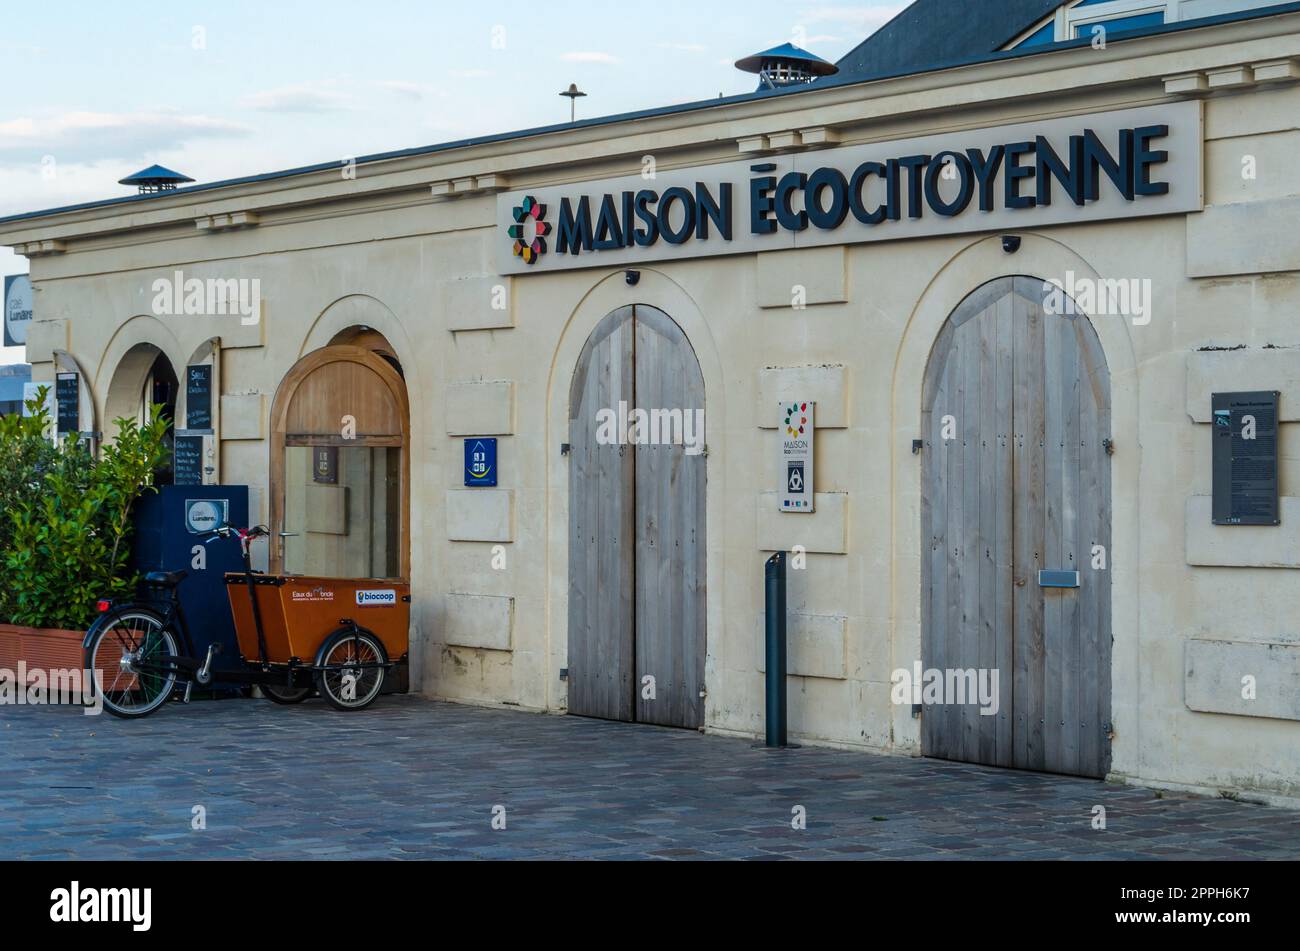 BORDEAUX, FRANKREICH - 16. AUGUST 2013: "Maison Ecocitoyenne", 2012 in Bordeaux, Frankreich, eingeweiht als Ort des Bewusstseins, der Praktiken und der Begegnungen zu den Themen Umwelt und nachhaltige Entwicklung Stockfoto